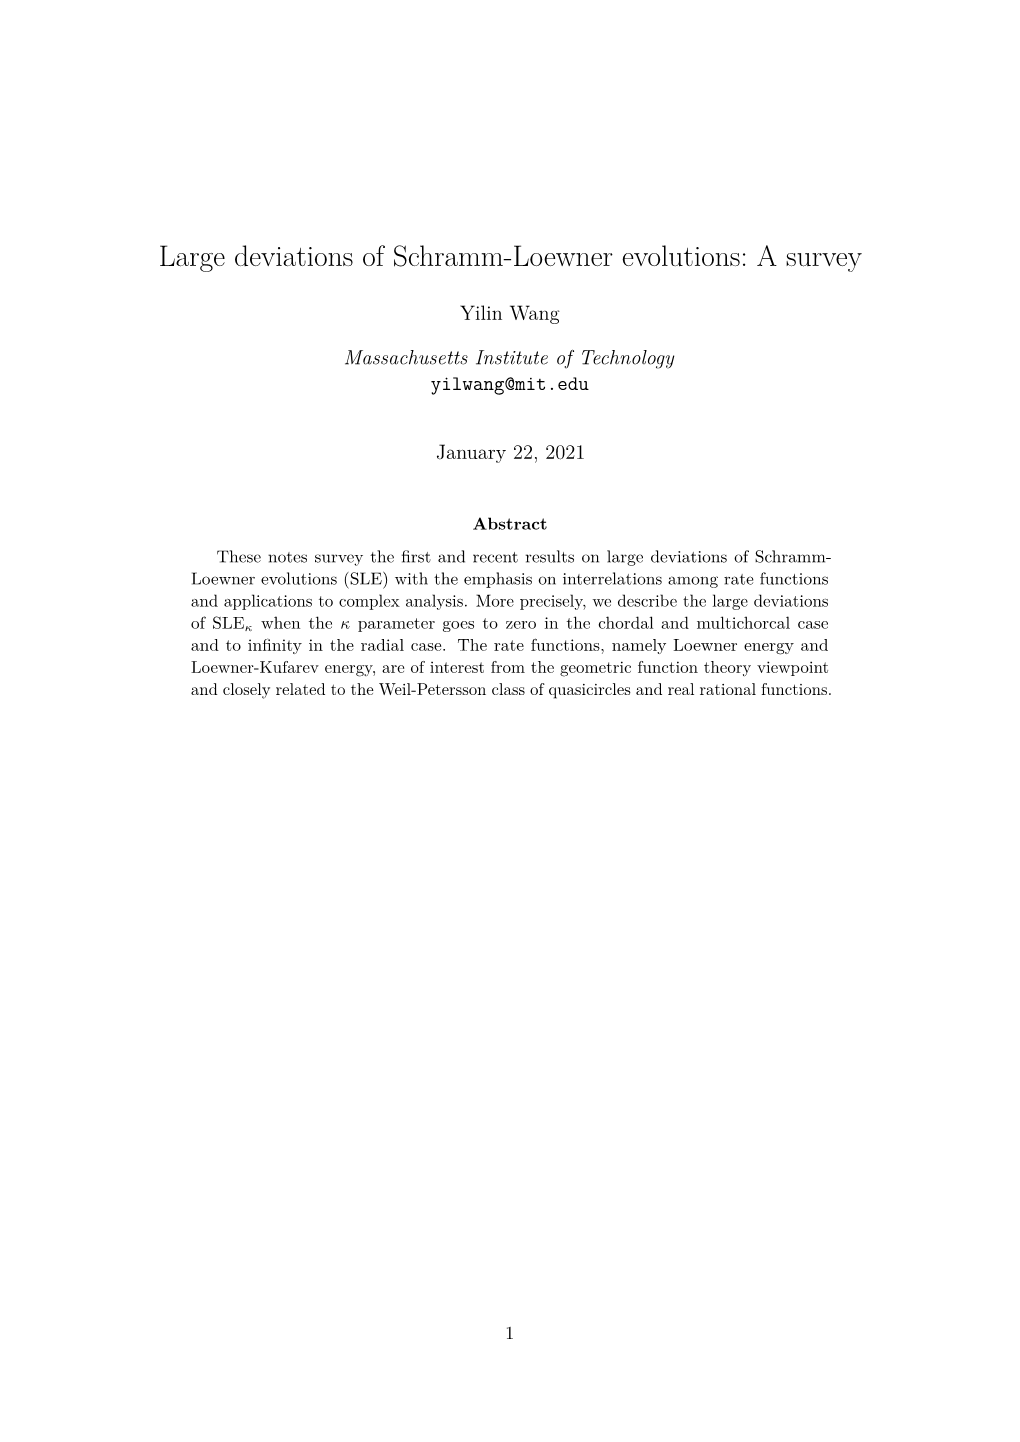 Large Deviations of Schramm-Loewner Evolutions: a Survey